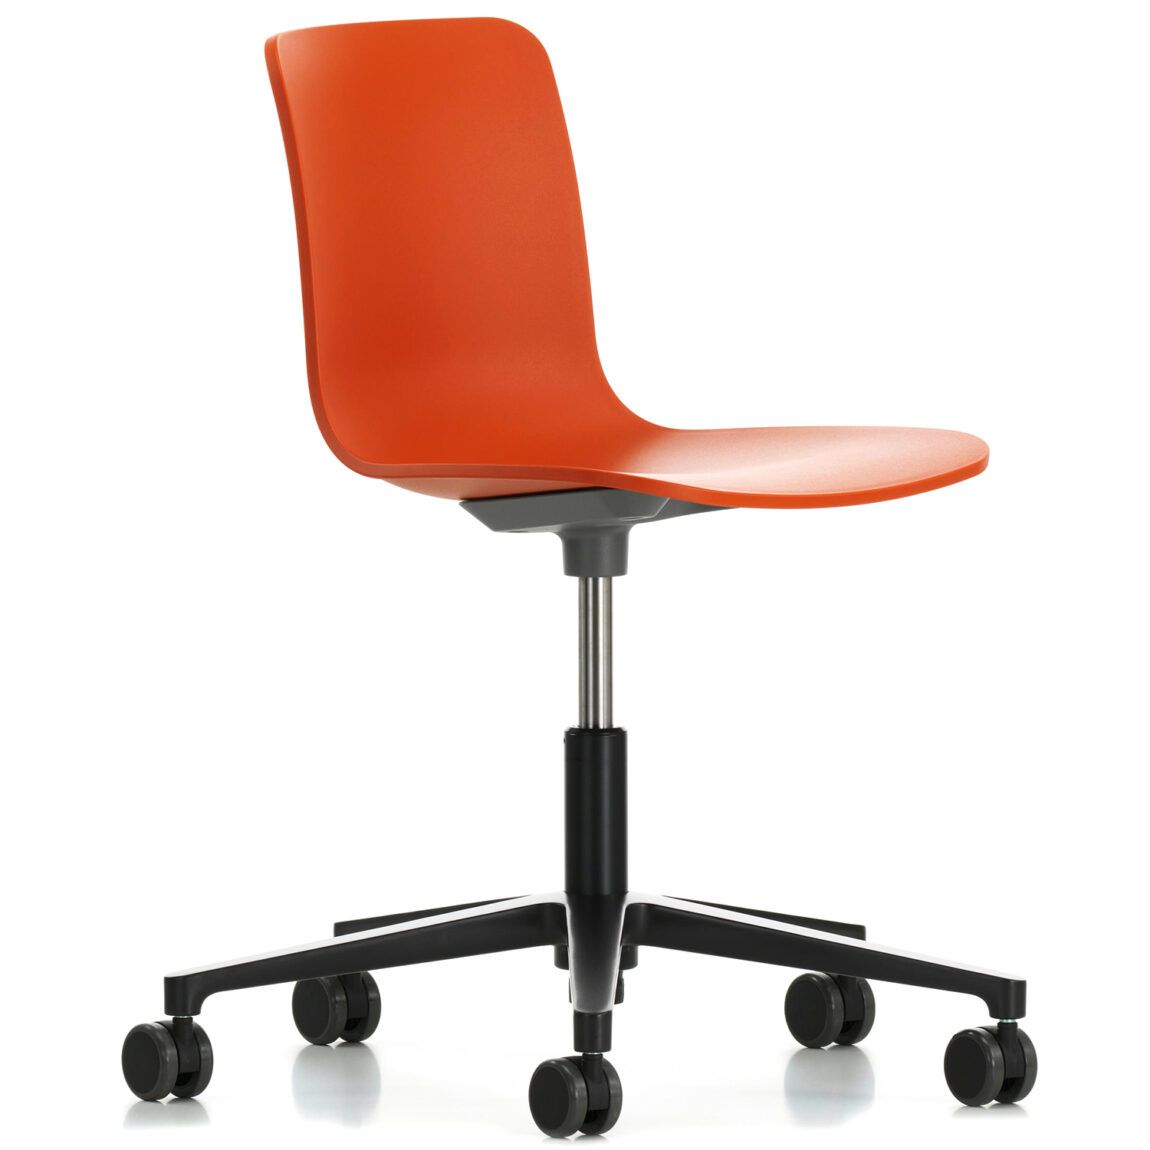 Vitra designové kancelářské židle